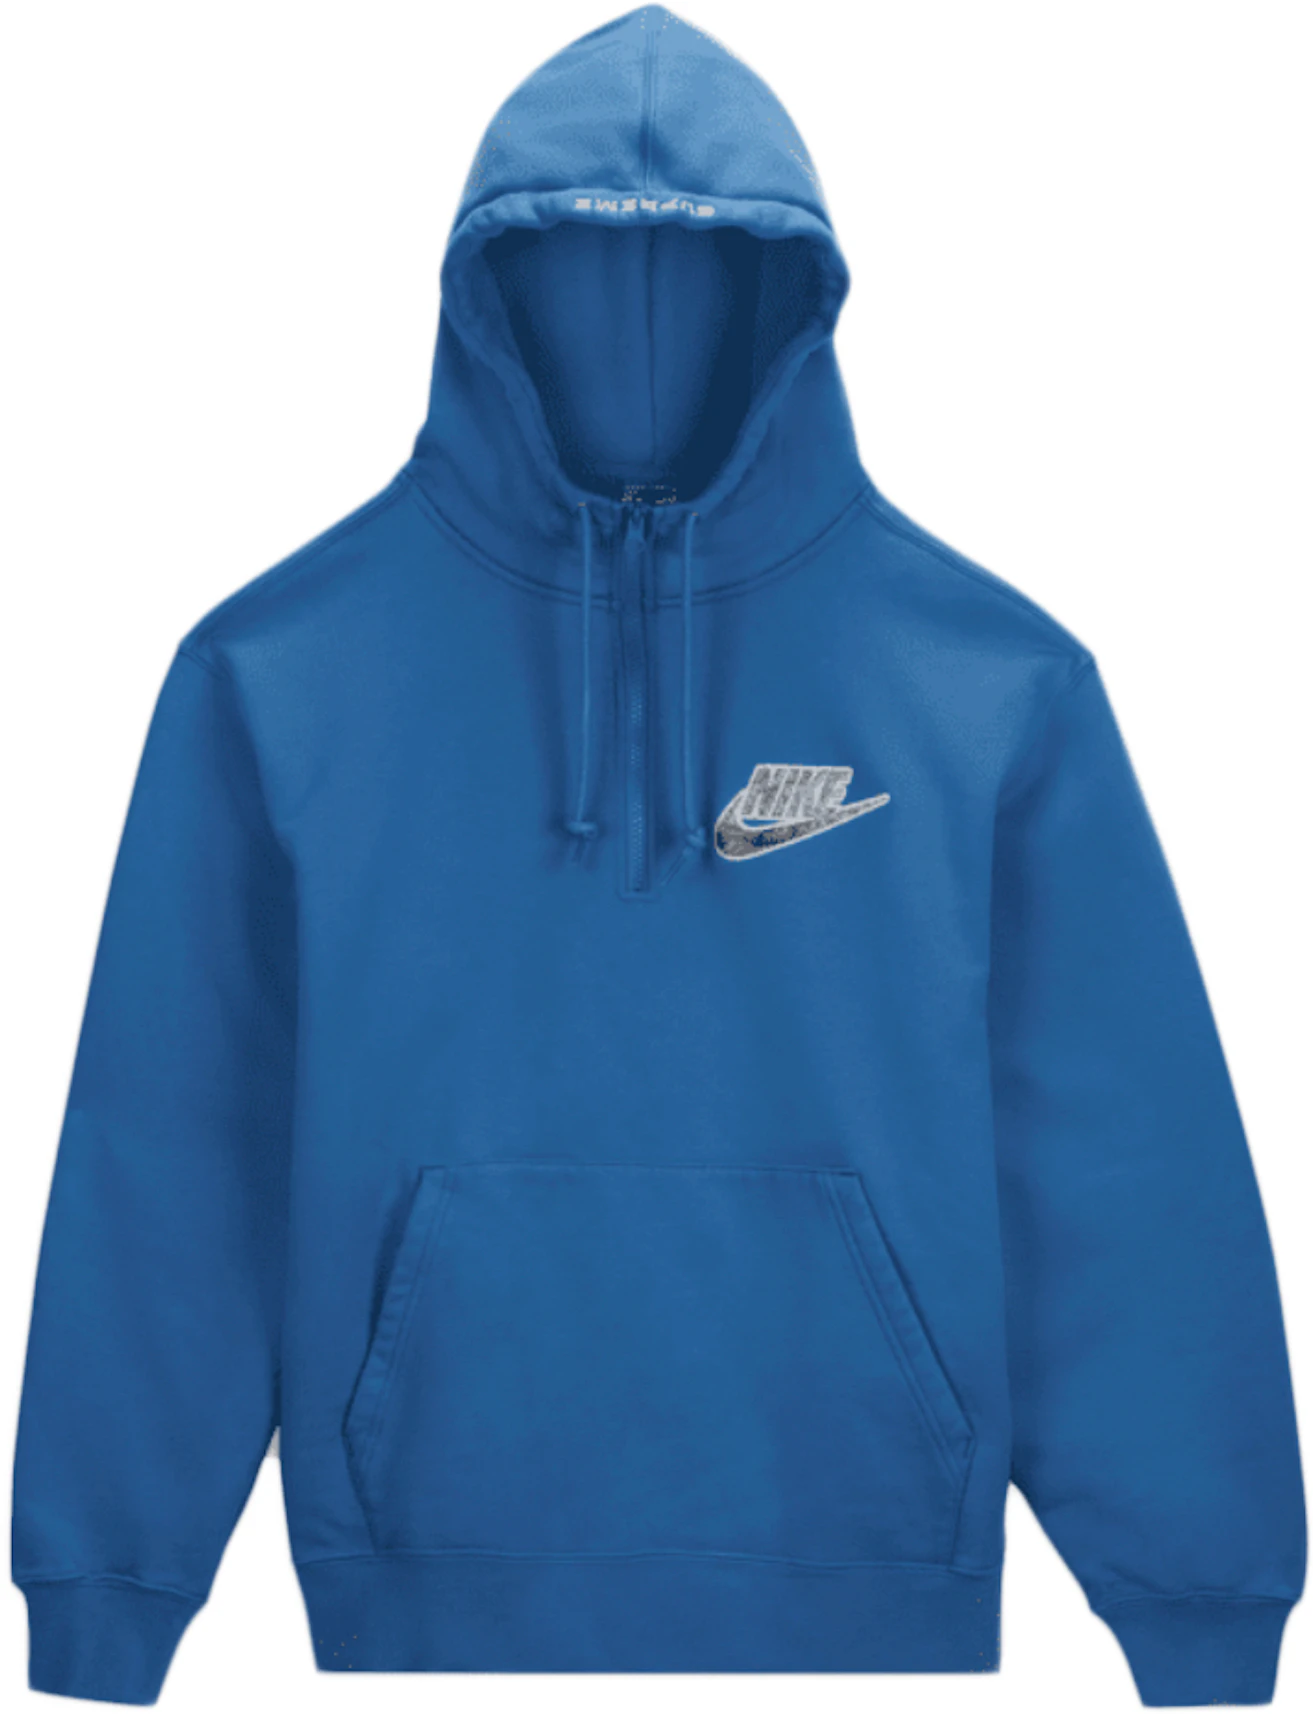 Nike Half Zip Hooded Sweatshirt Blue - SS21 - US